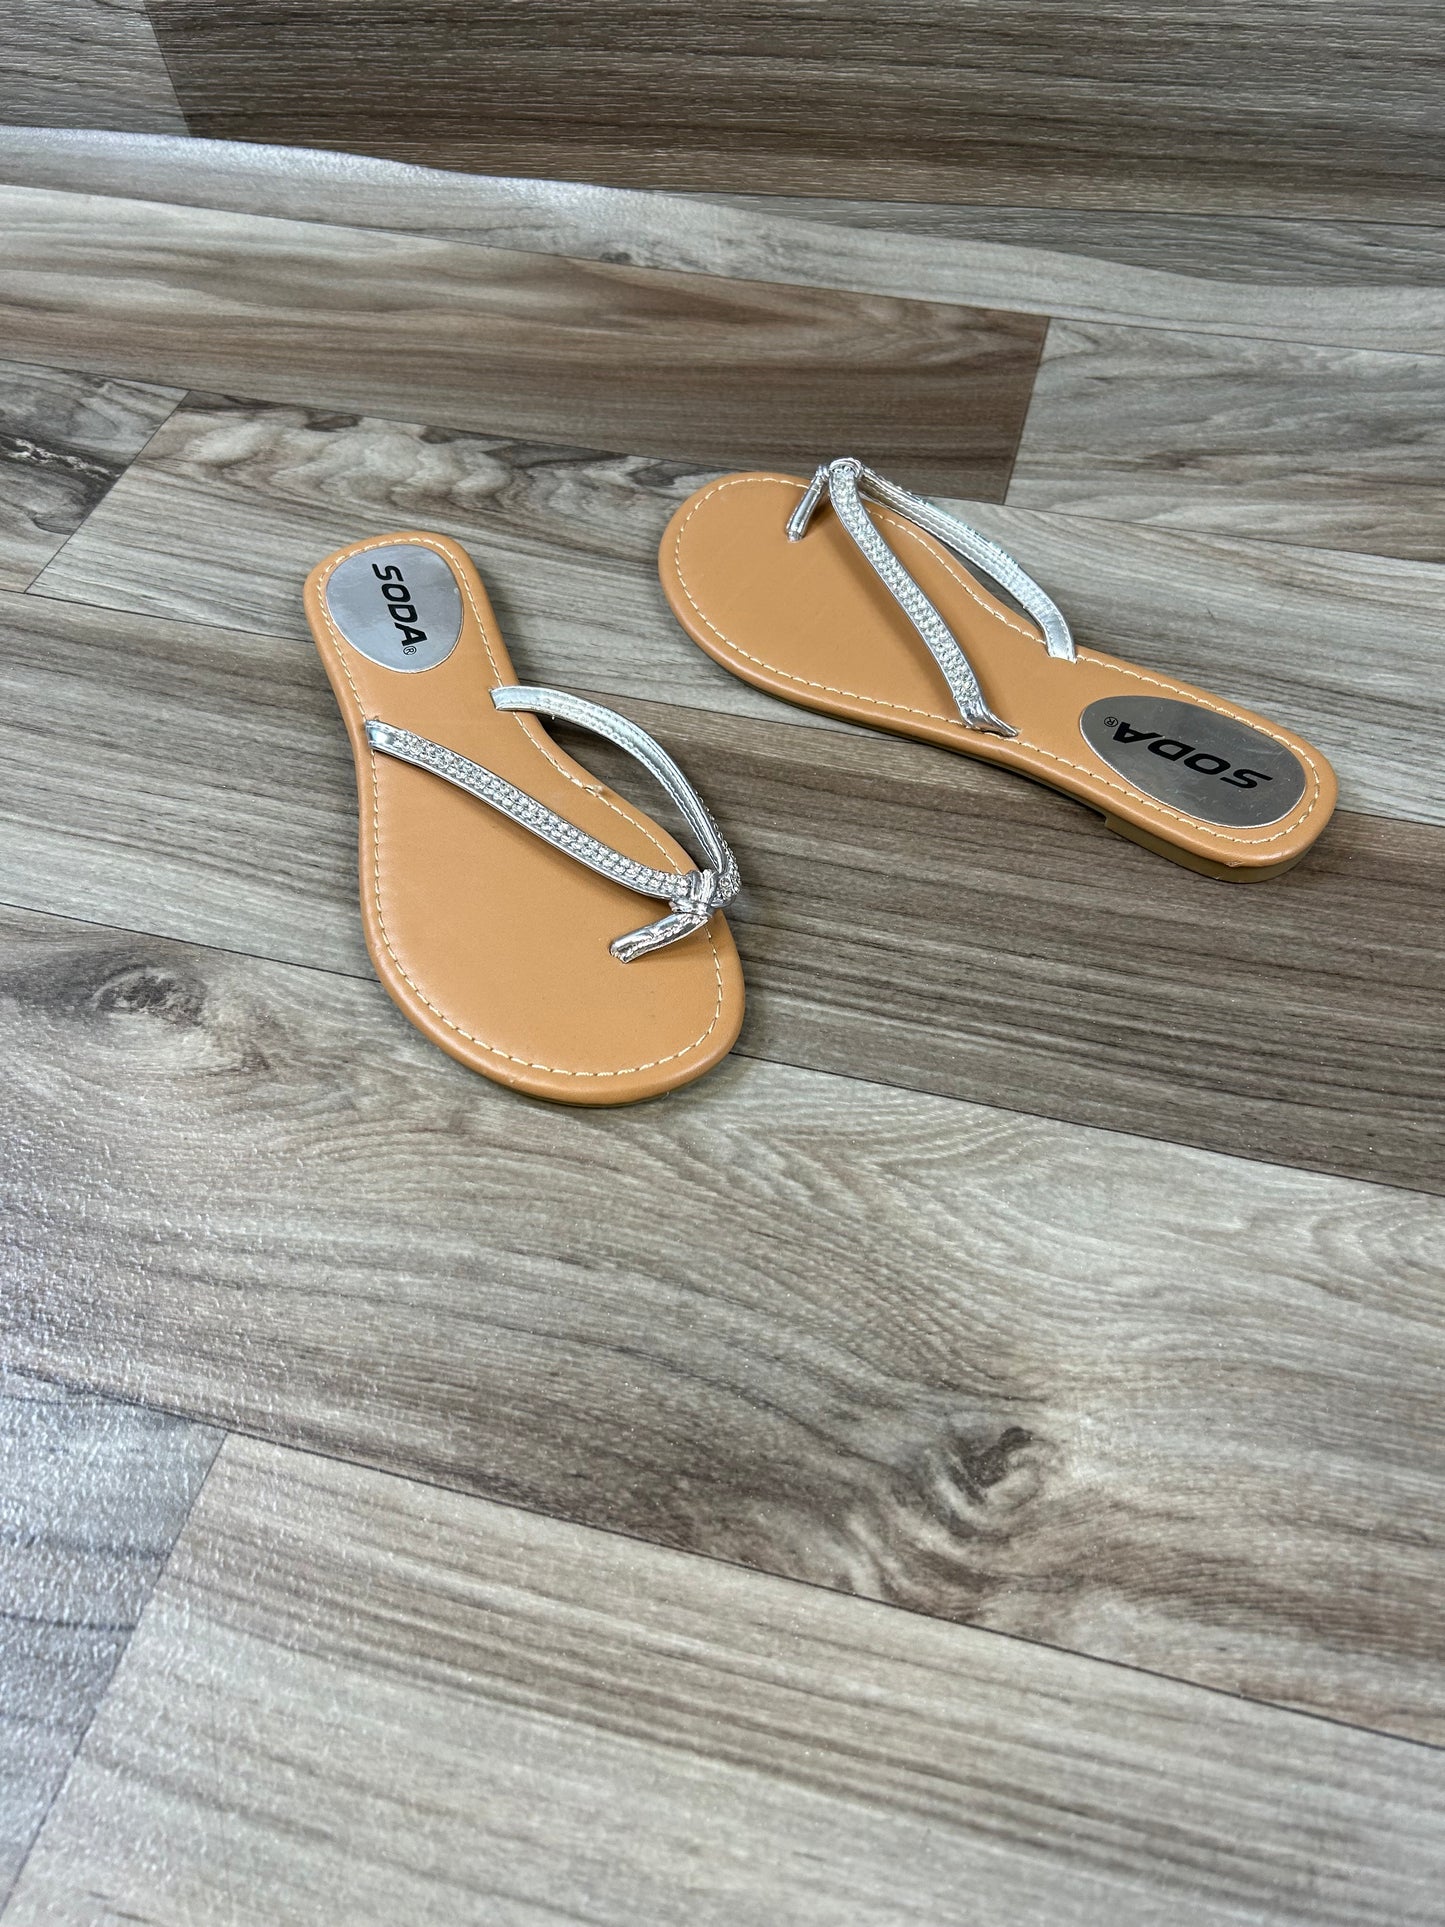 Sandals Flip Flops By Soda  Size: 7.5